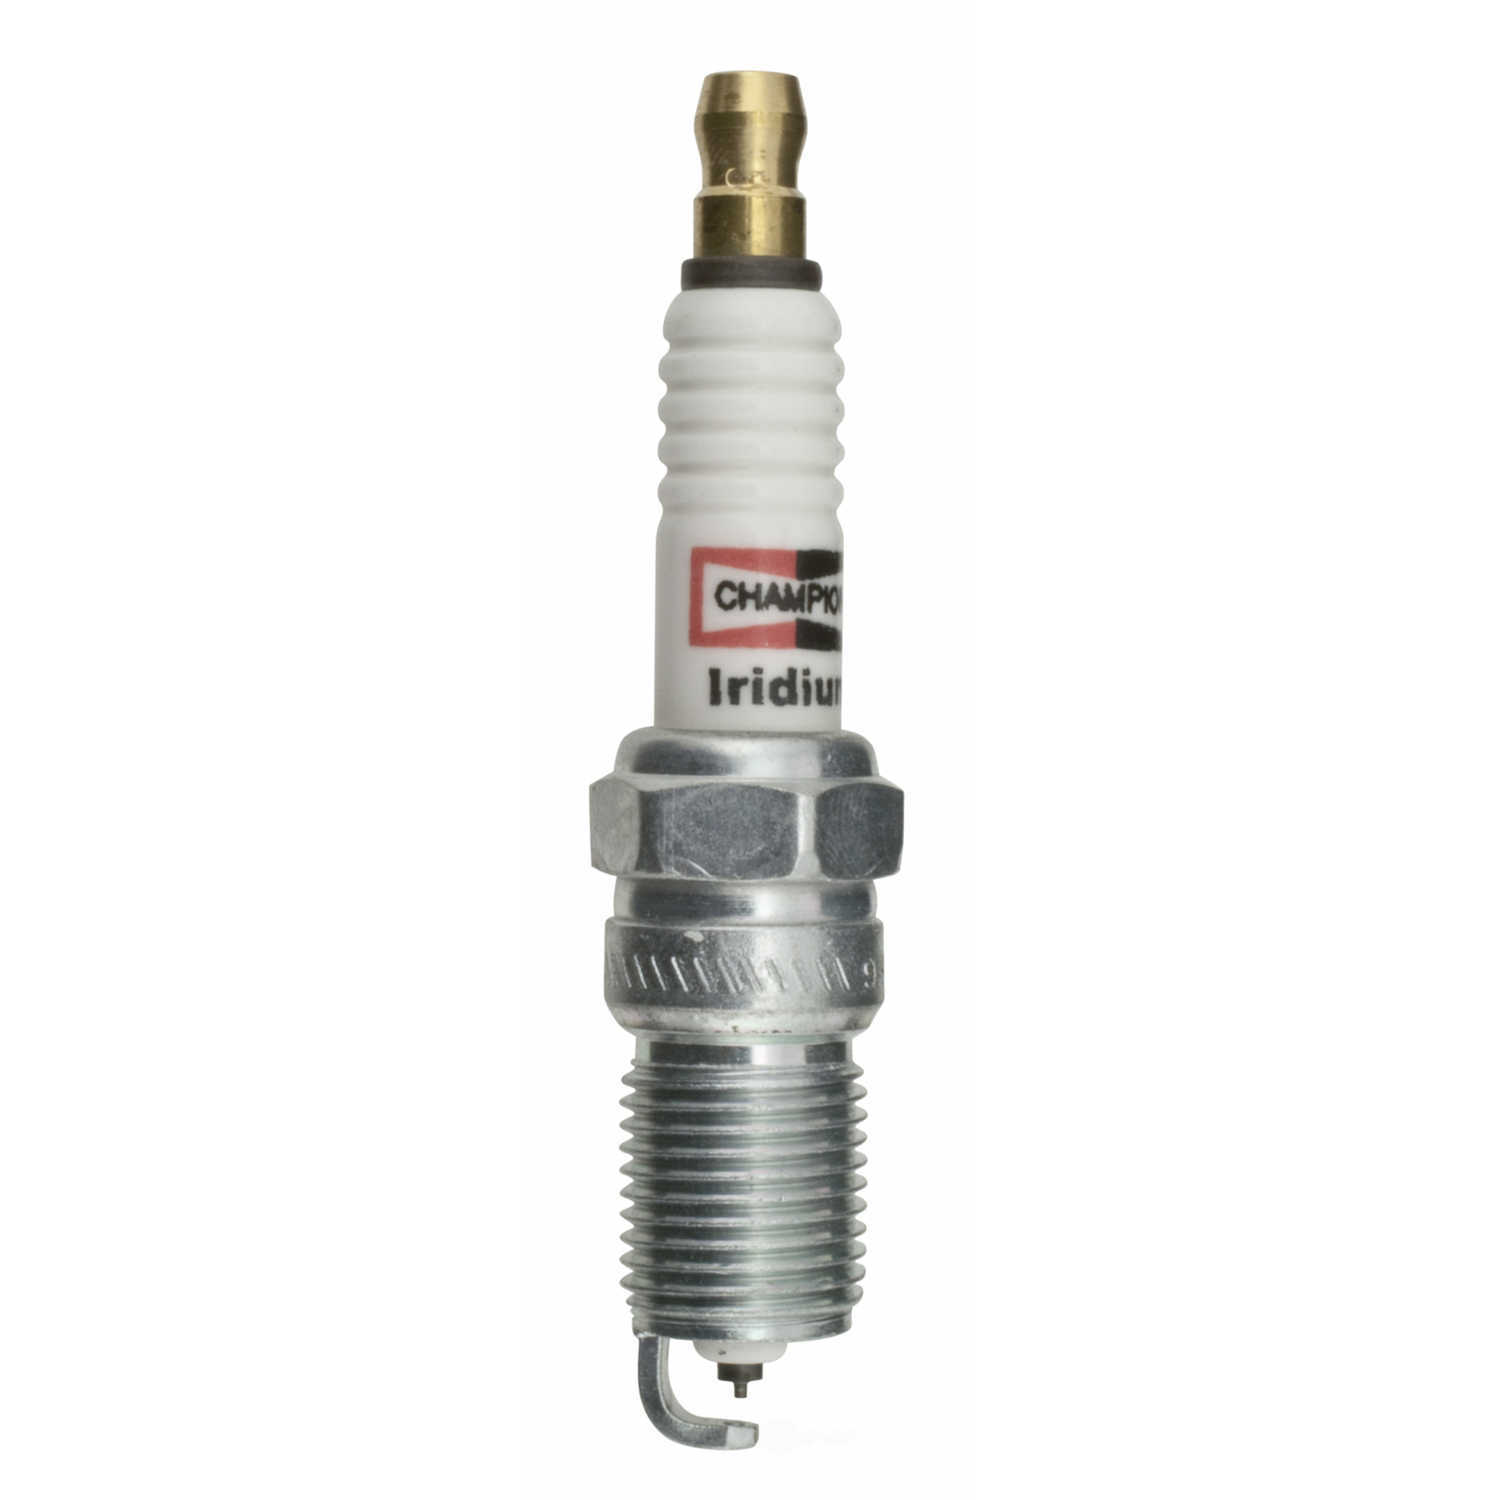 CHAMPION SPARK PLUGS - Iridium Spark Plug - CHA 9808